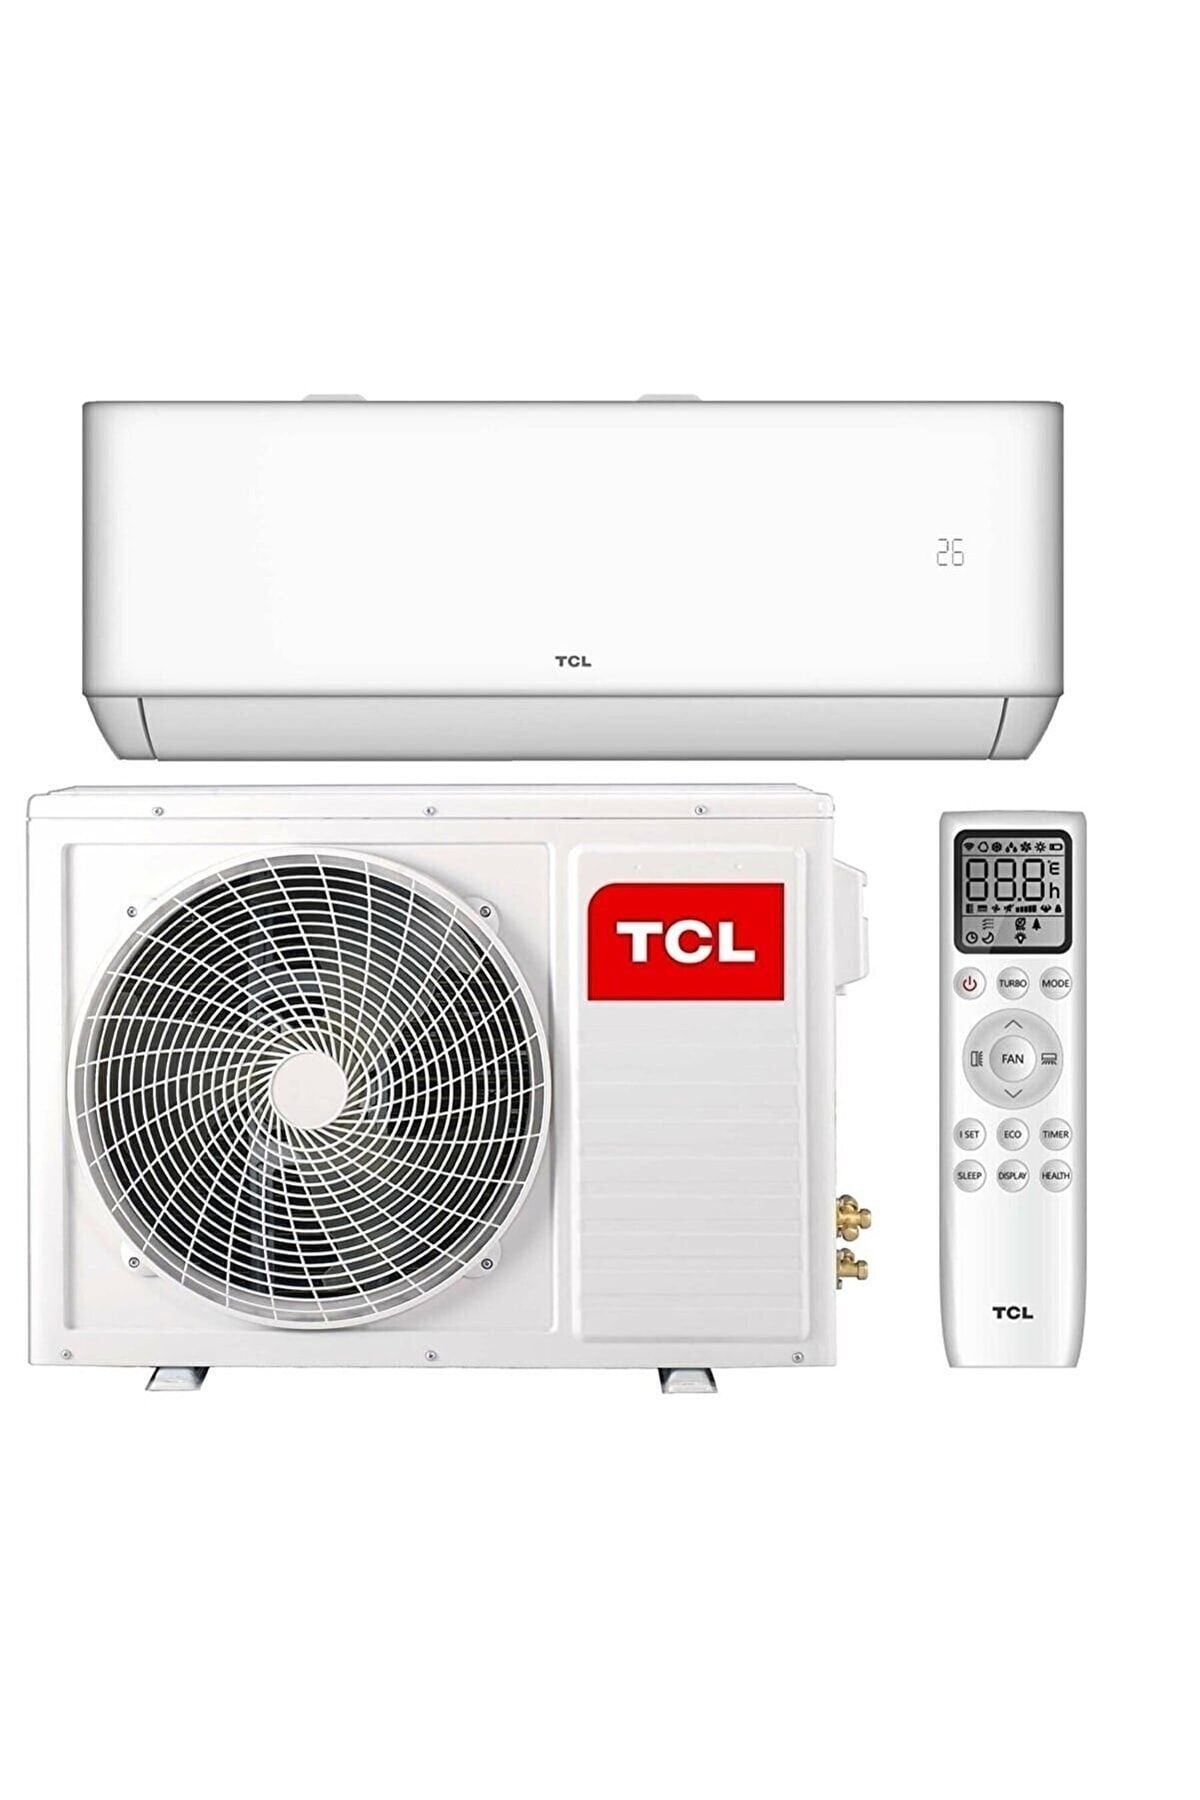 TCL T-pro Tac-18chsd/tpg1ı 18000 Btu Inverter Klima (MONTAJ DAHİL)